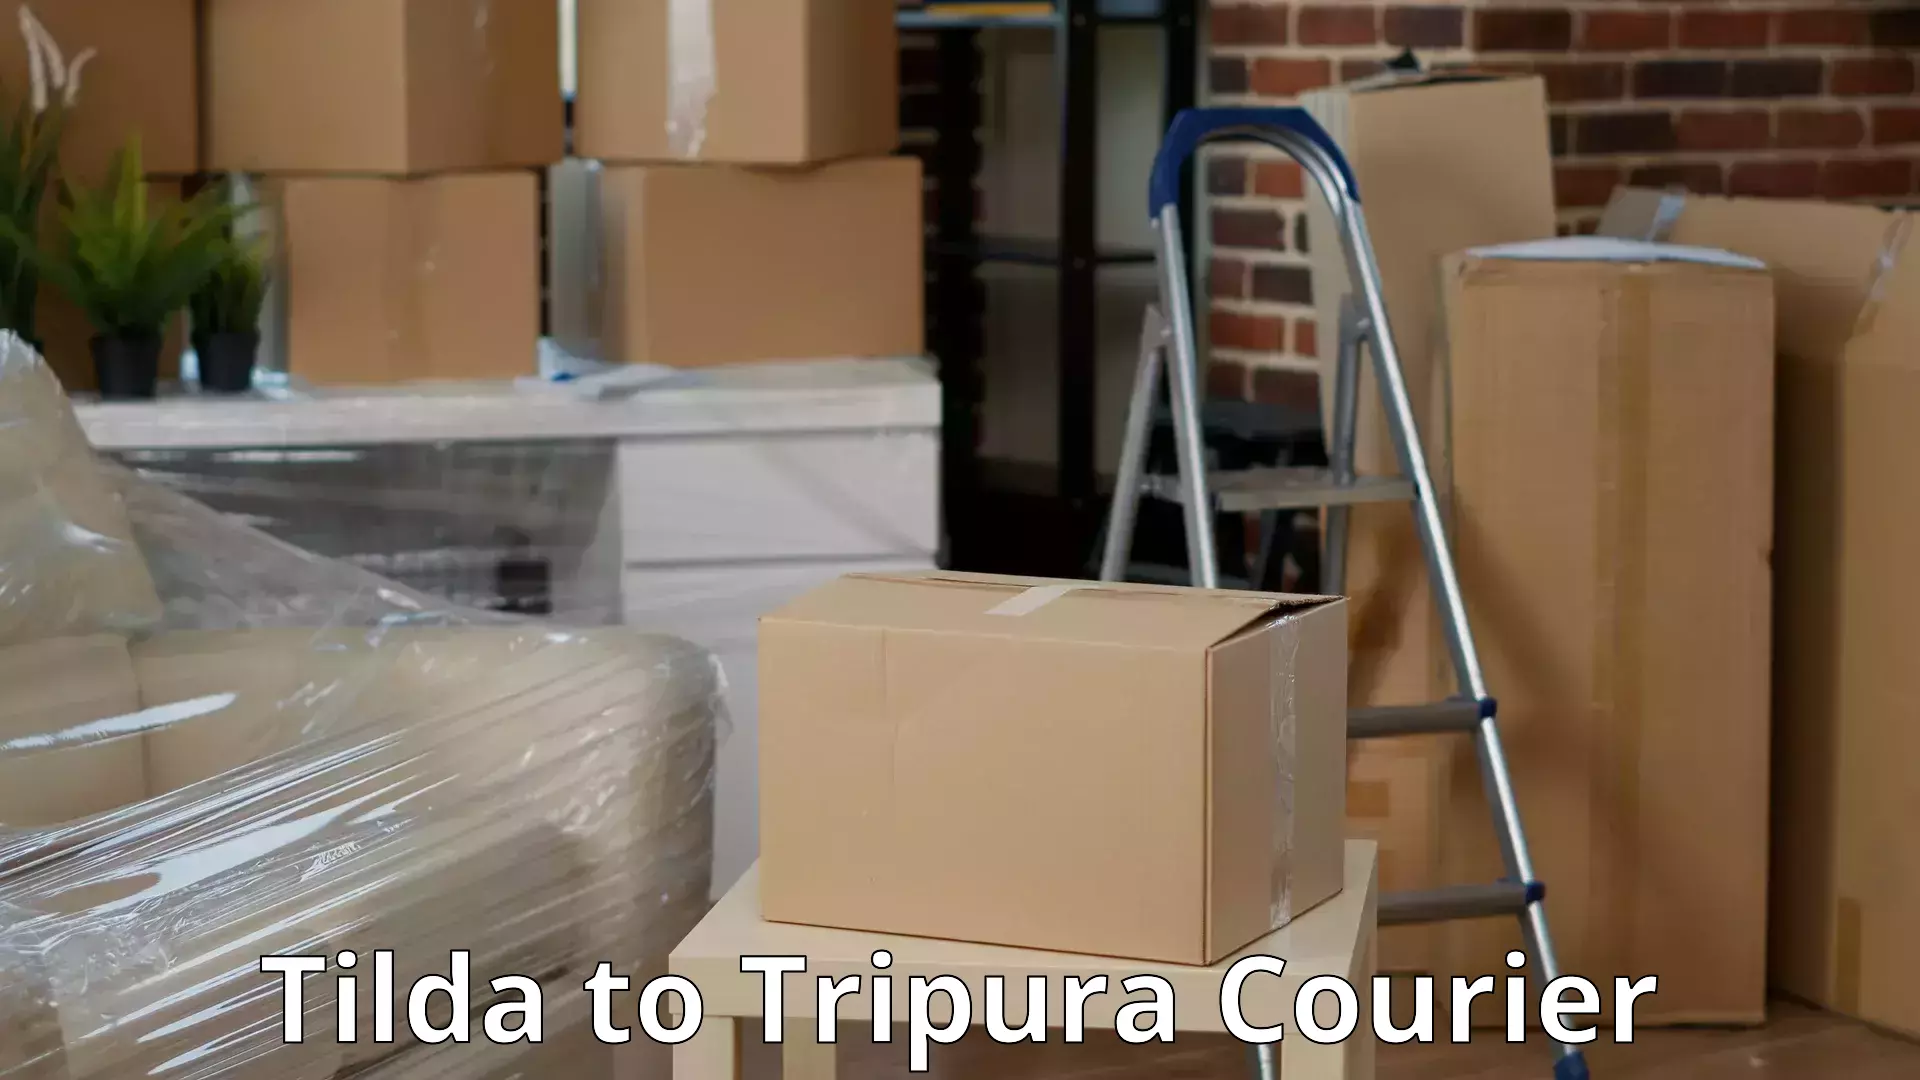 Full-service relocation in Tilda to Tripura